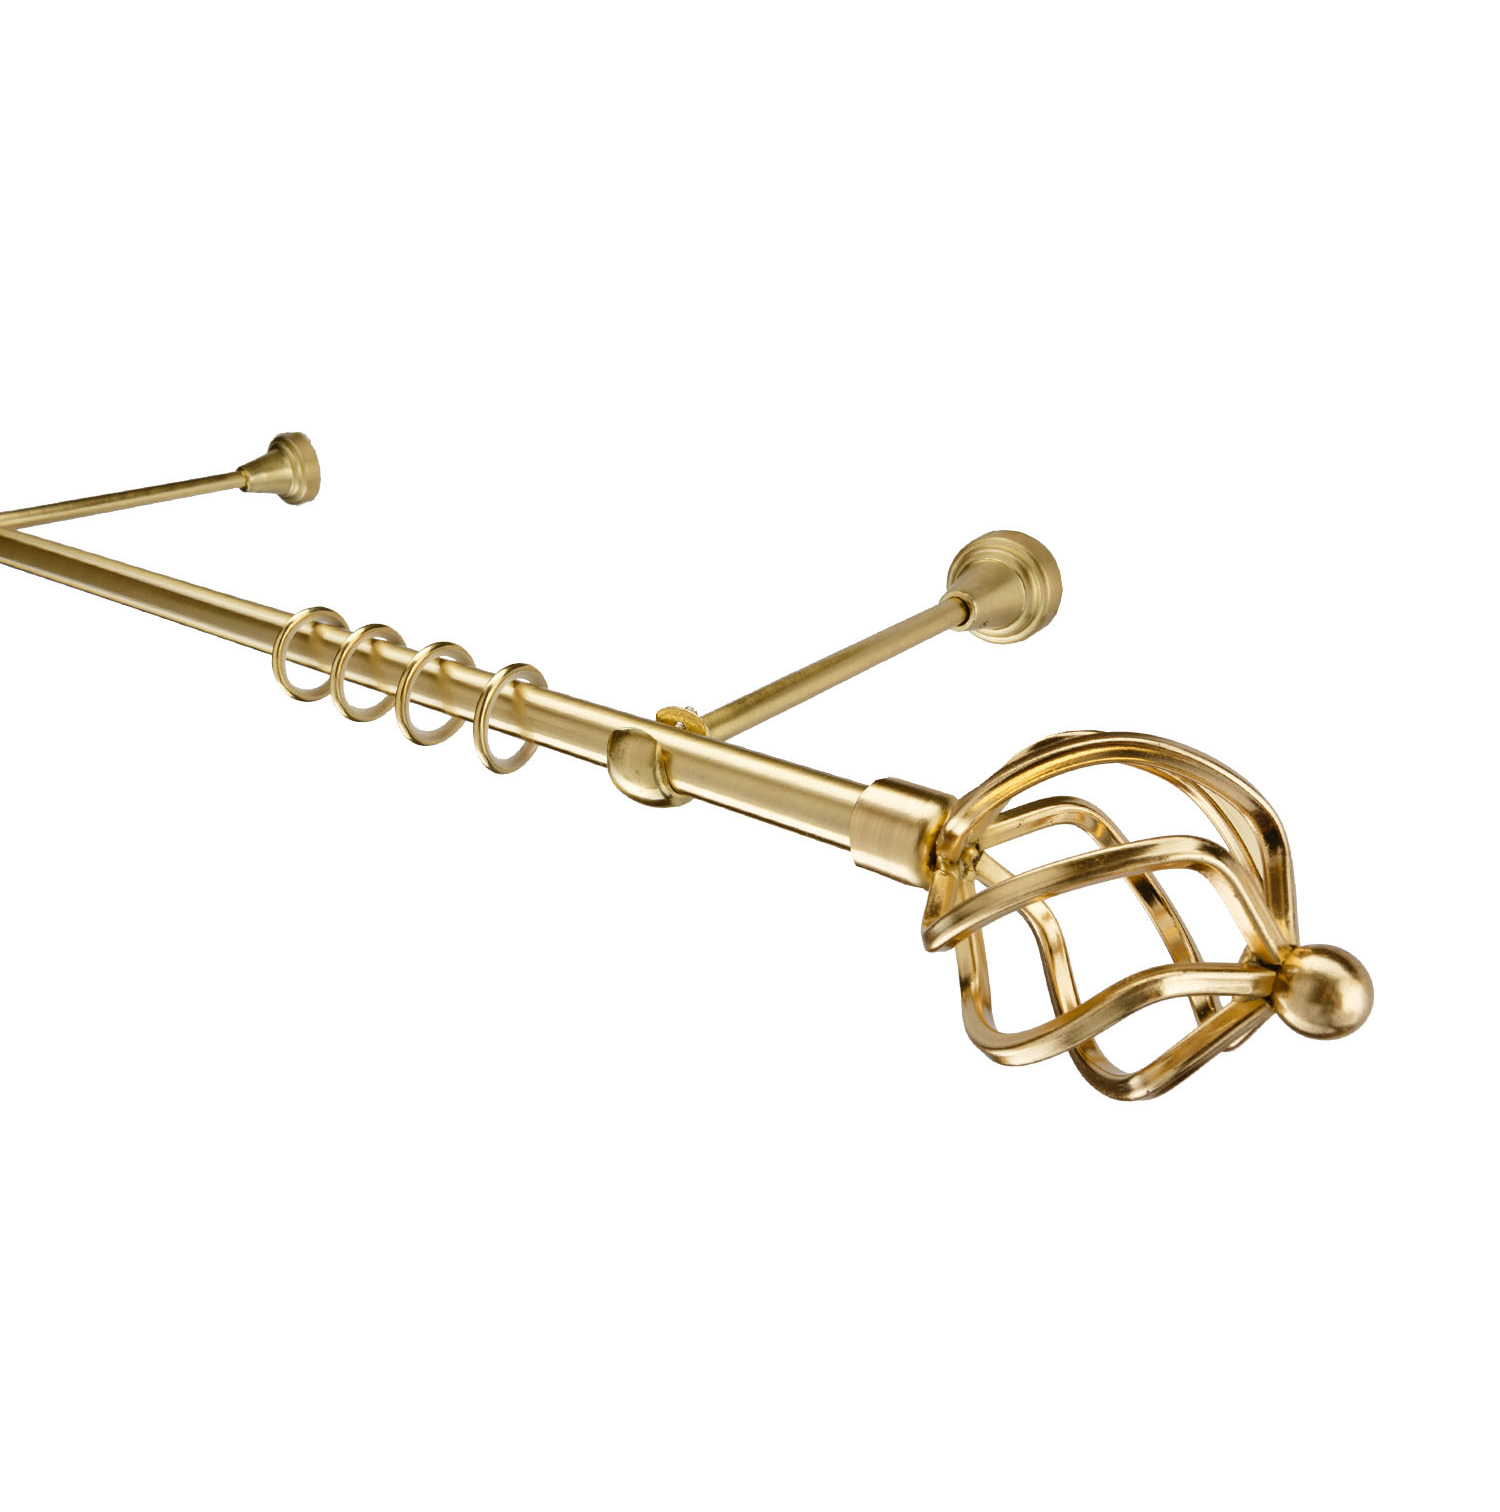 Металлический карниз для штор Солярис, однорядный 16 мм, золото, гладкая штанга, длина 180 см